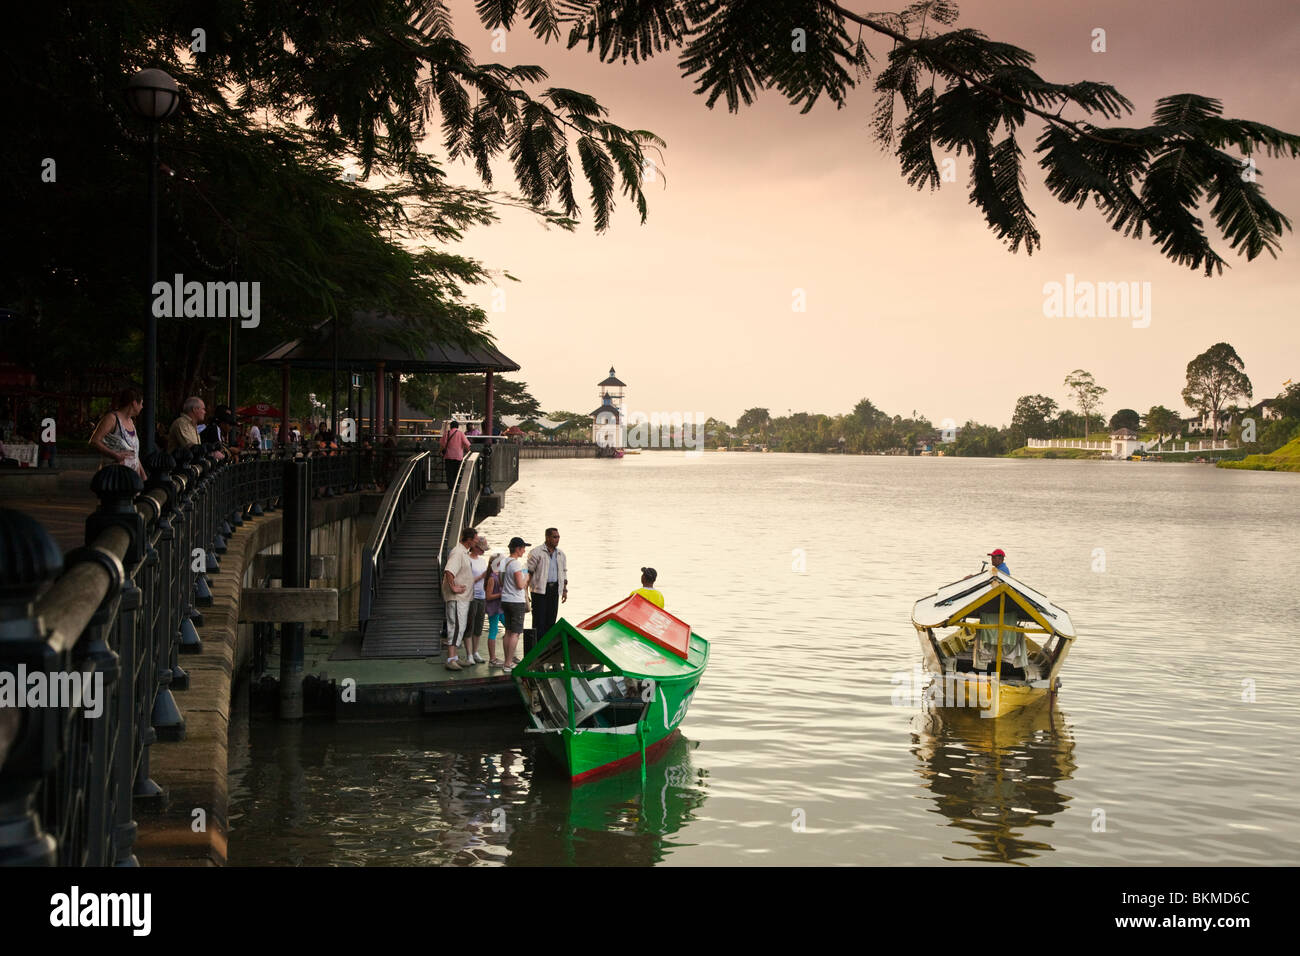 Tambangs (sampan (bateau-taxi) prendre des passagers à bord de l'eau au crépuscule. Kuching, Sarawak, Bornéo, Malaisie. Banque D'Images